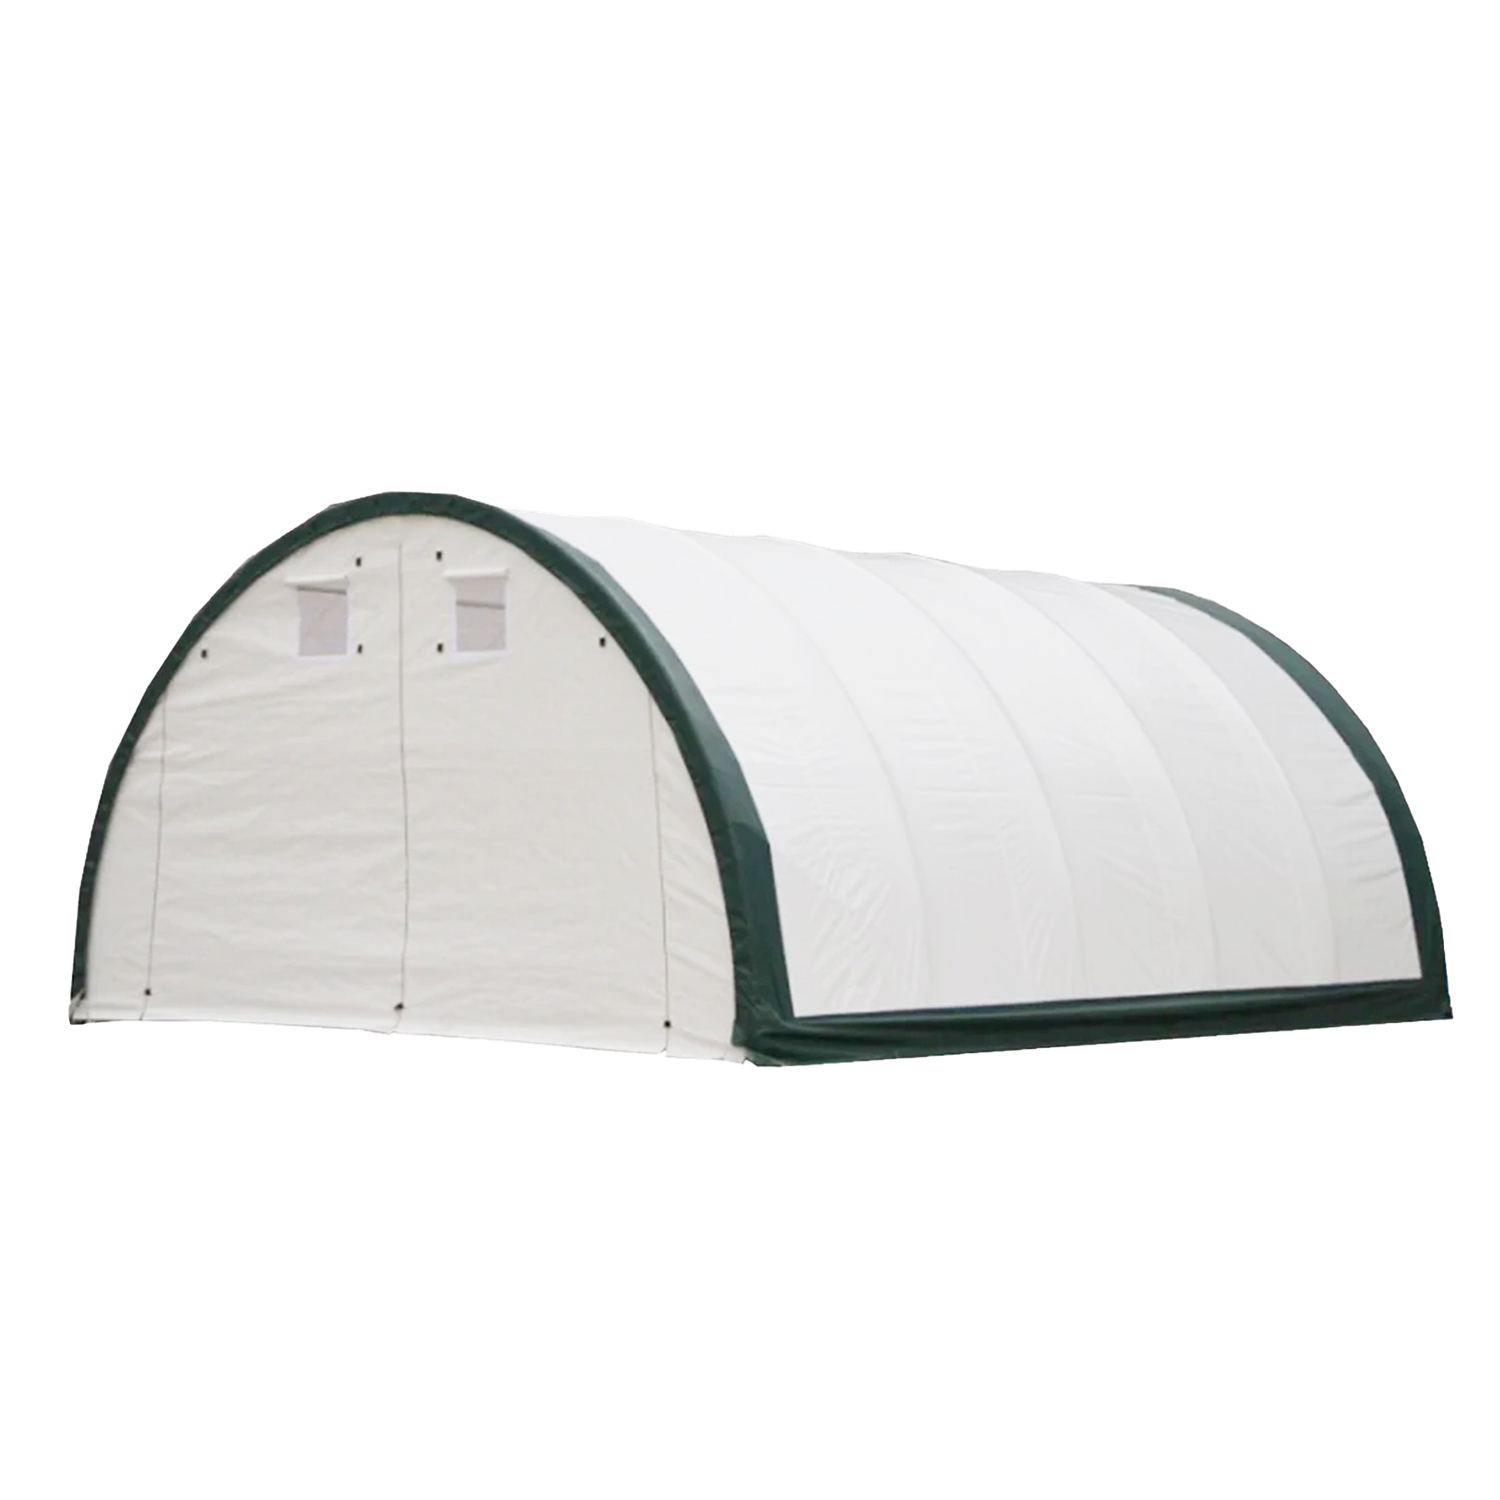 Single Truss Arch Storage Shelter W20'xL30'xH12'